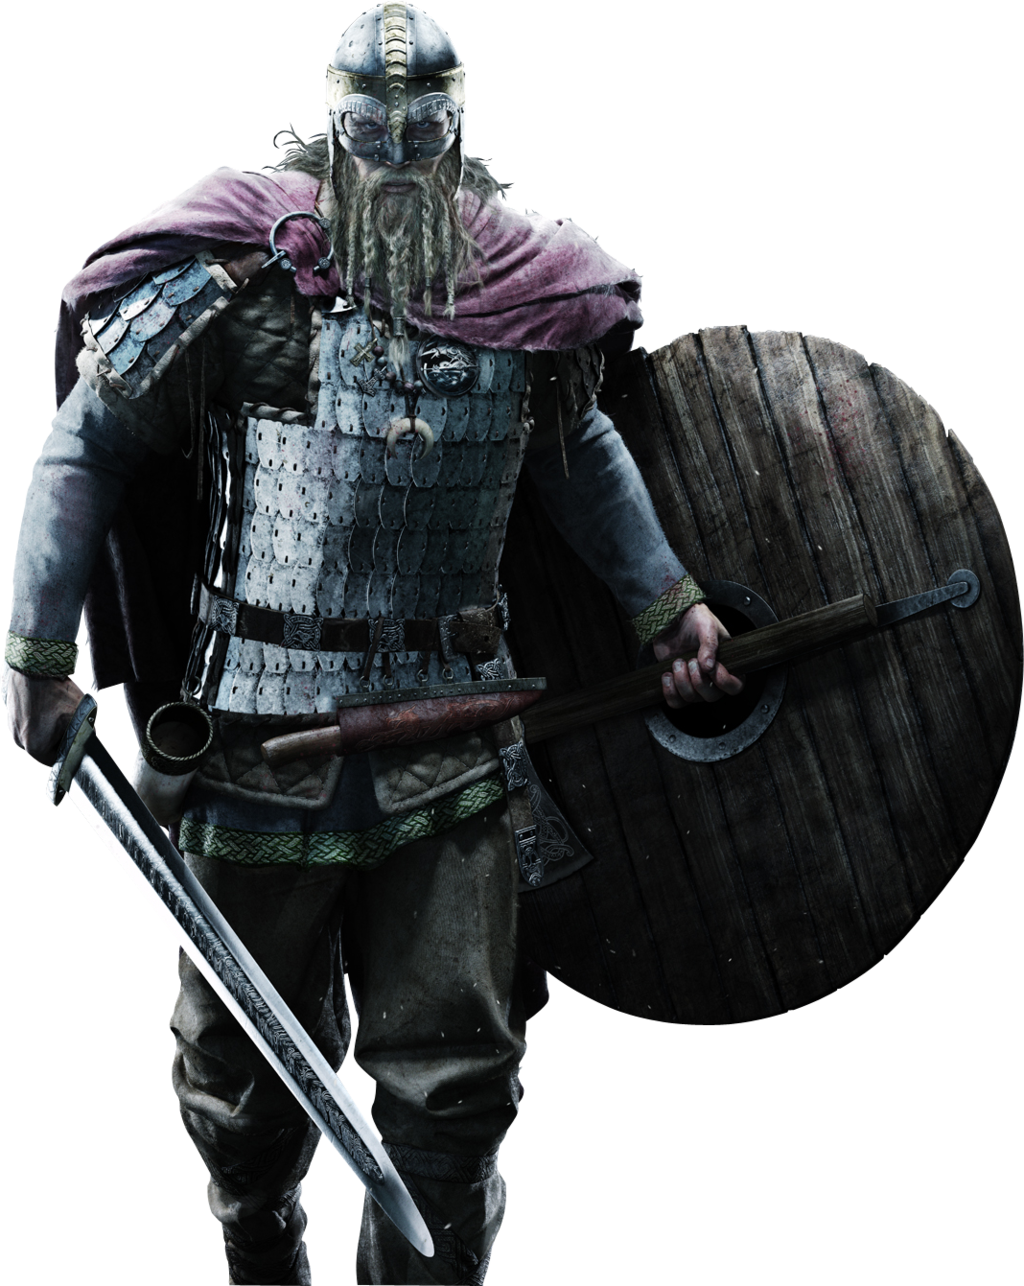 Guerreiro viking